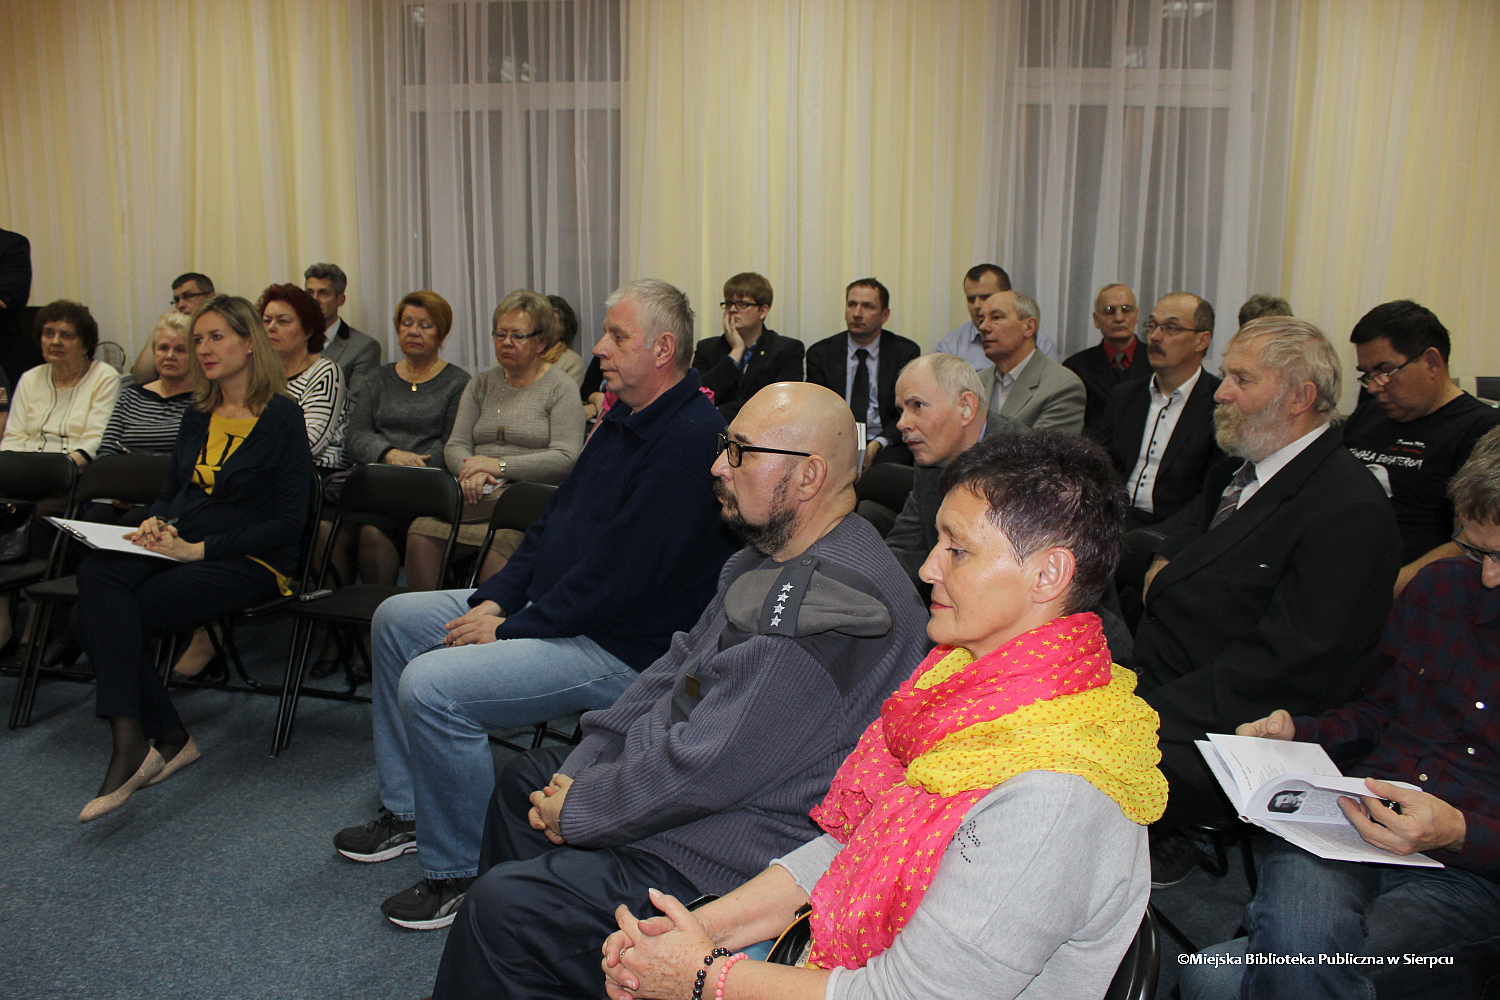 Publiczno spotkania promujcego ksik w Bibliotece Miejskiej, 13.11.2014 r.